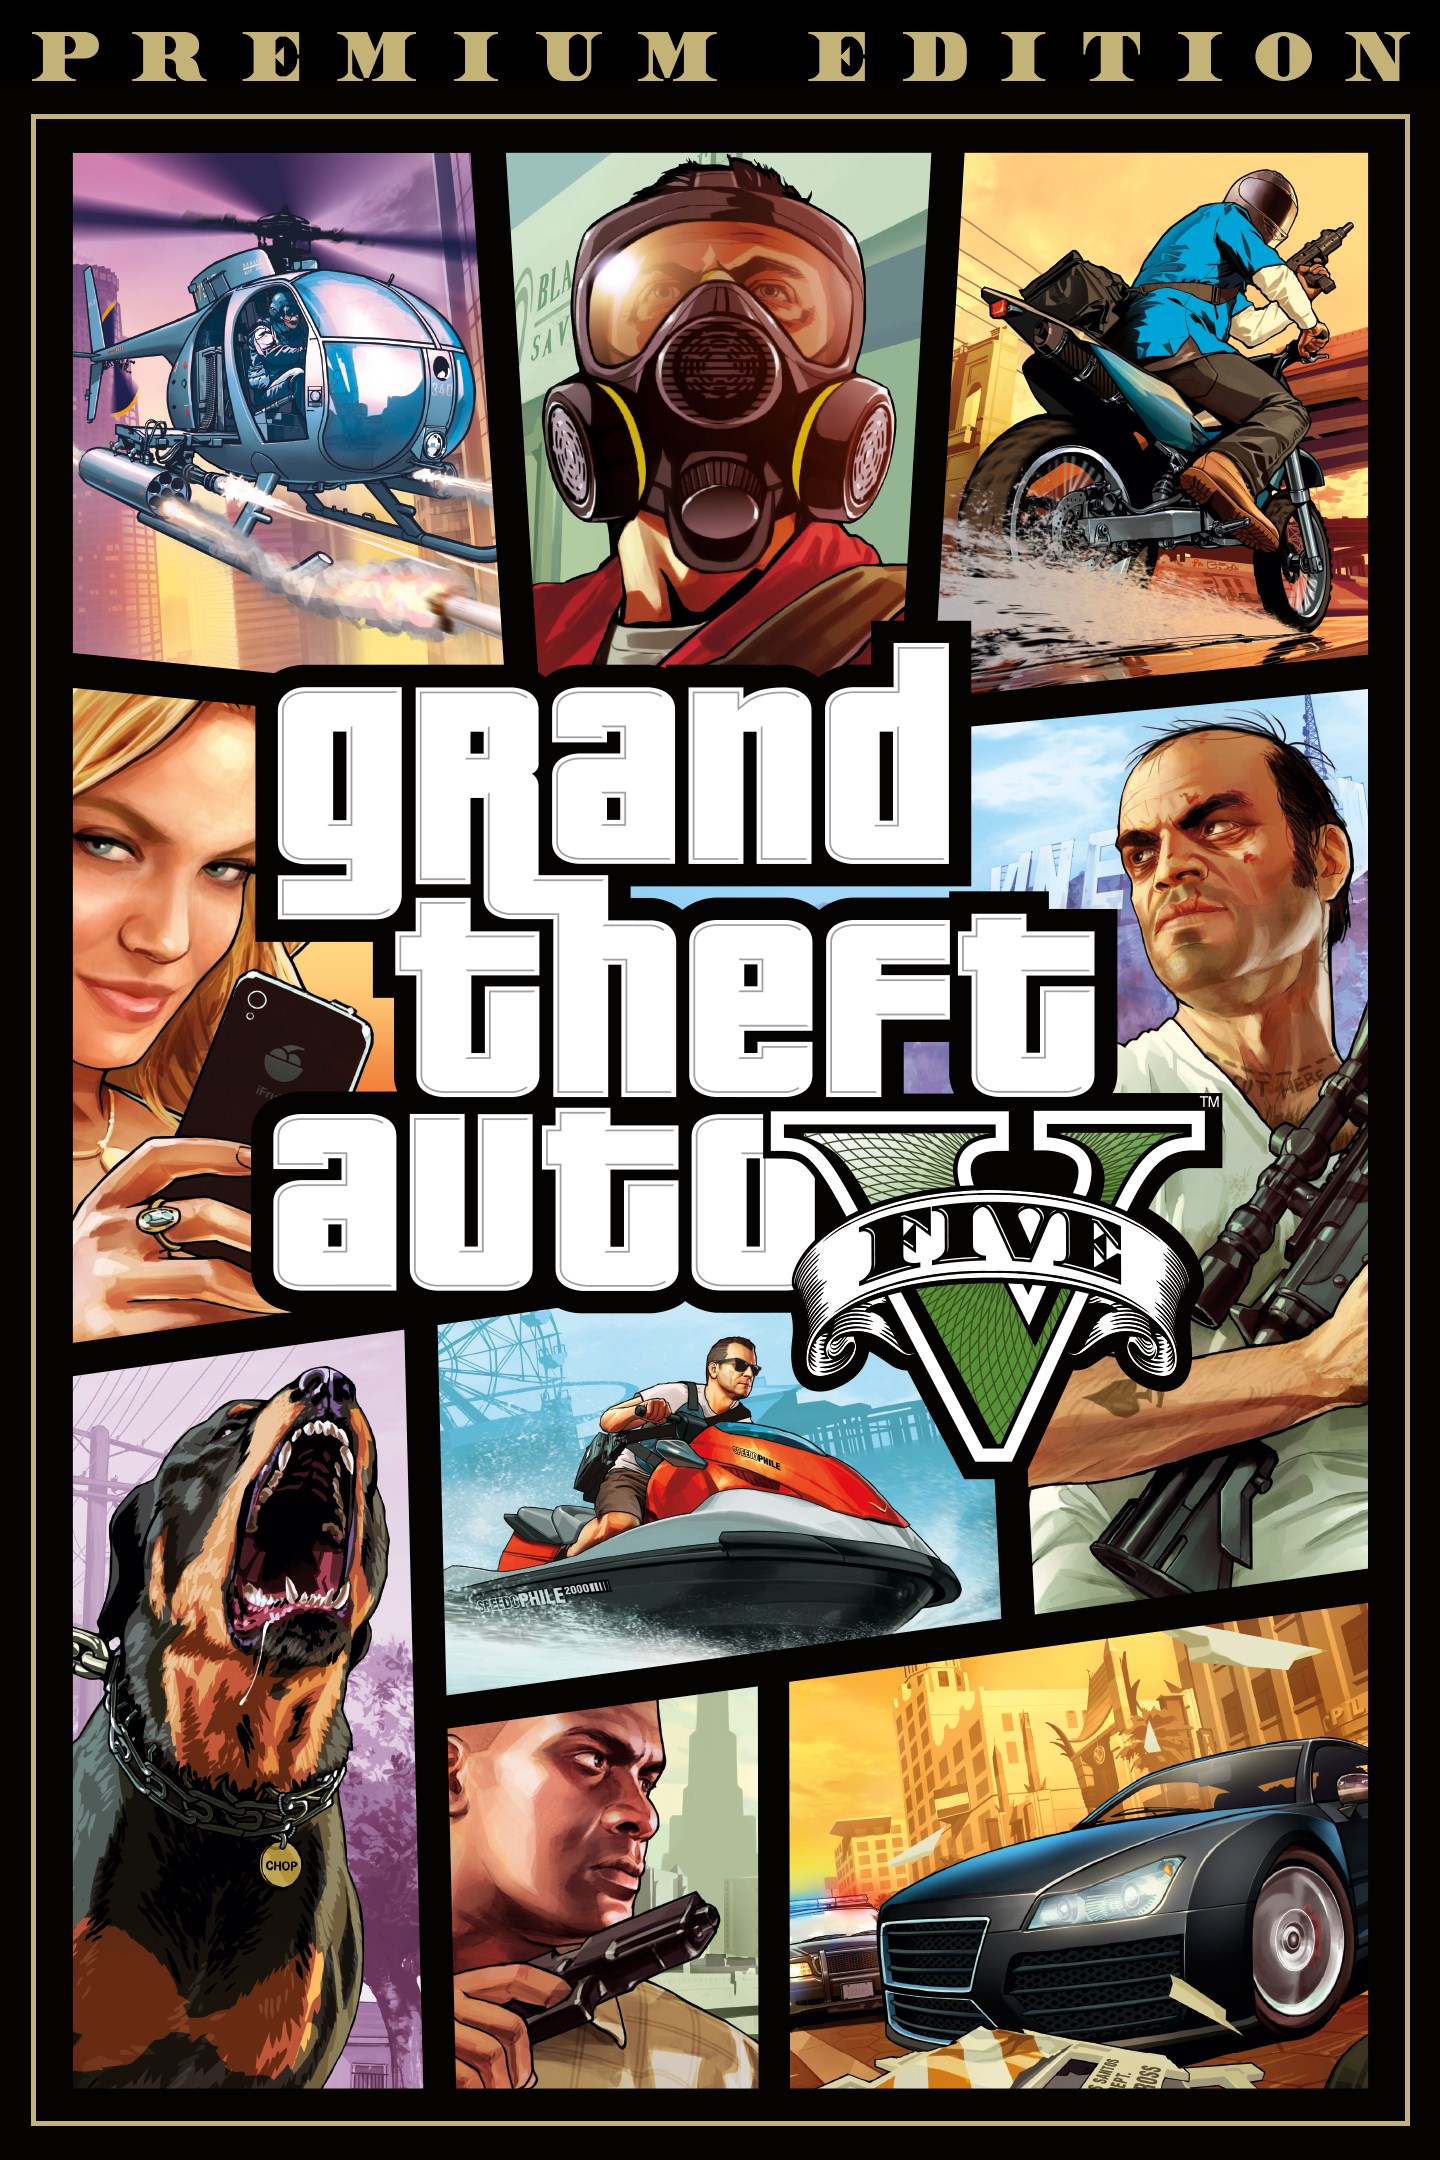 waarschijnlijk Katholiek Onnauwkeurig Grand Theft Auto V | Xbox